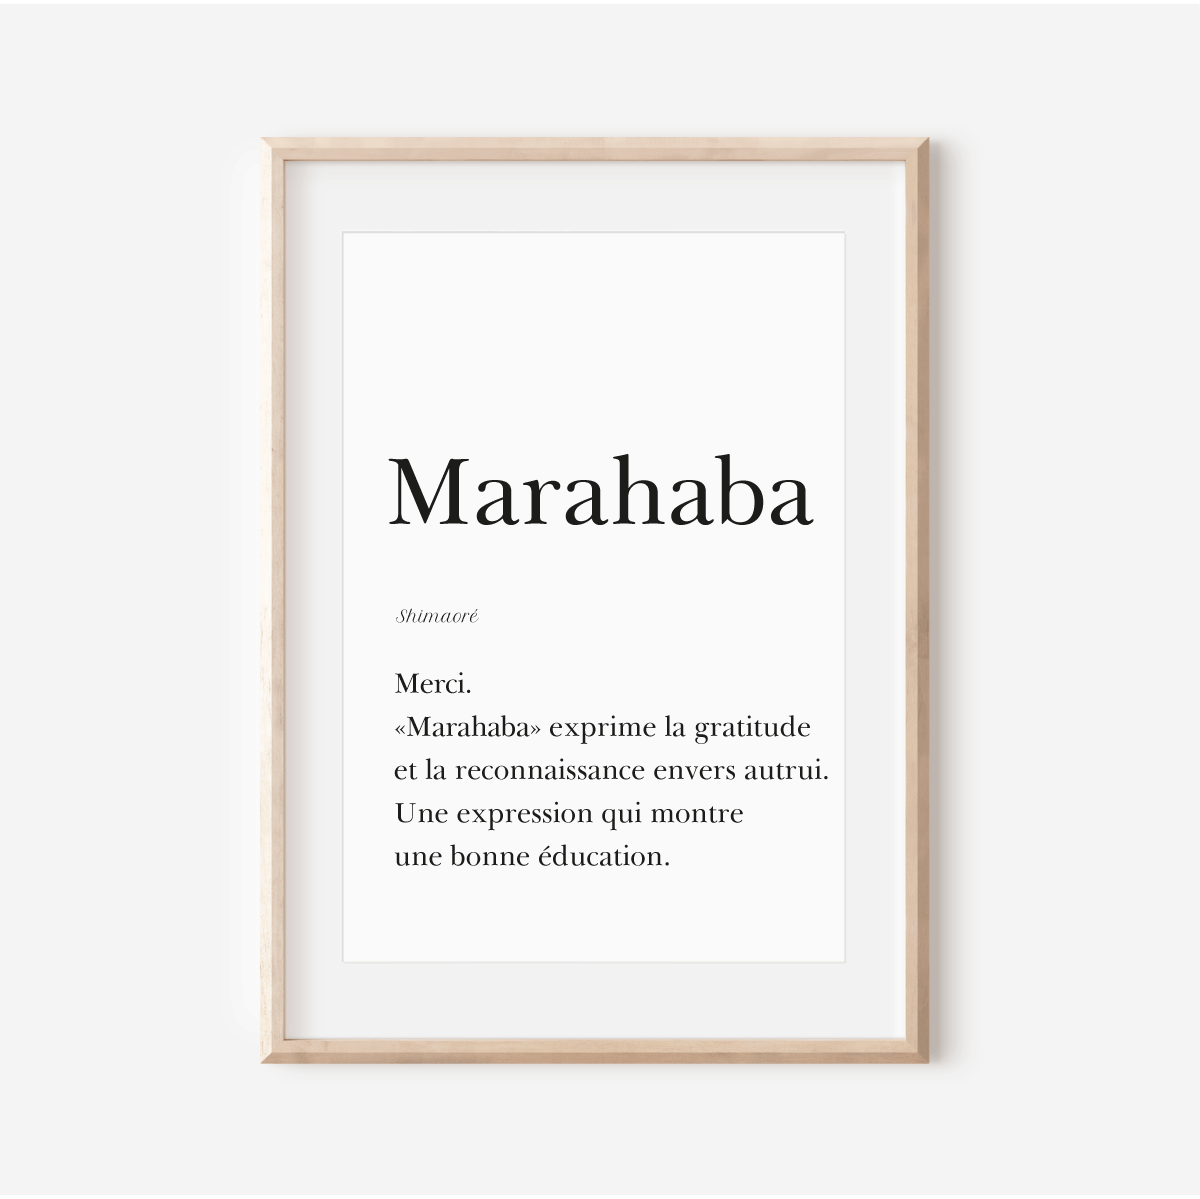 Merci en Shimaoré - Affiche "Marahaba"